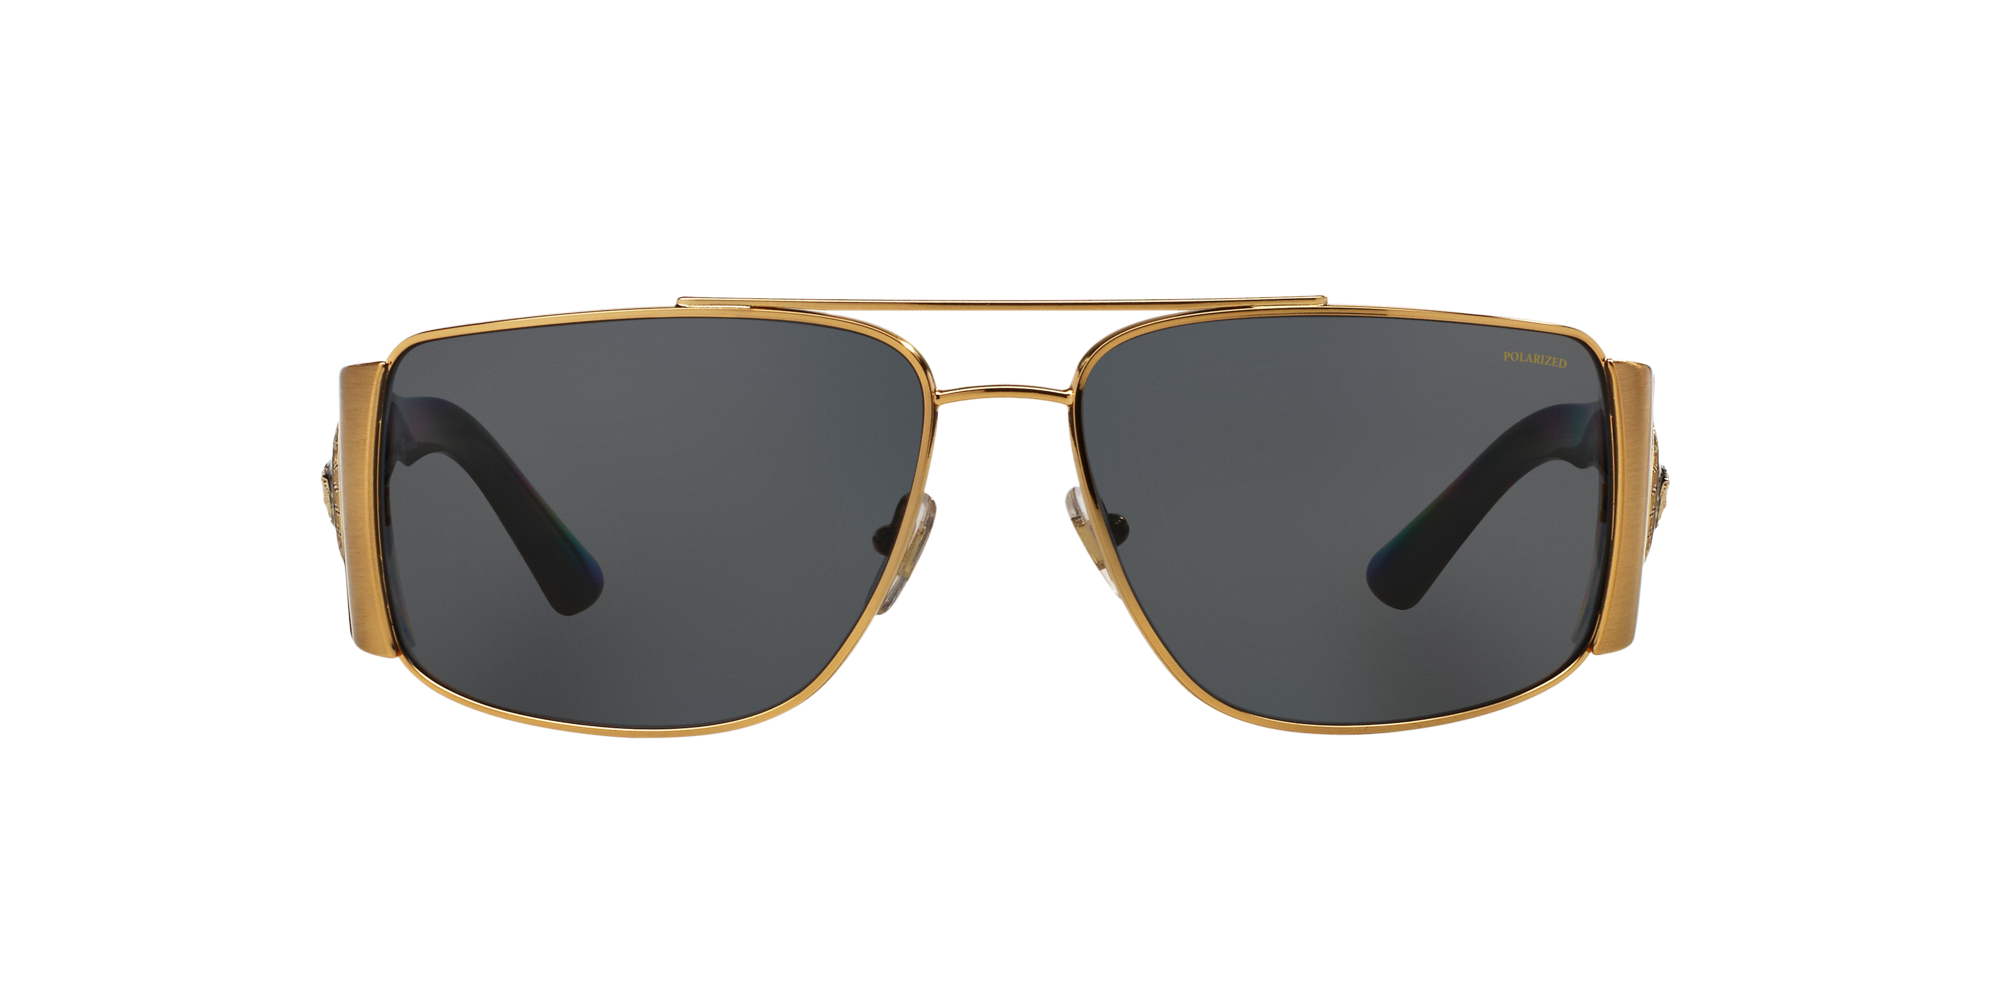 Details about   Versace Mens Sunglasses VE2173 139173  Havana/Brown Size 60 100% Authentic & New